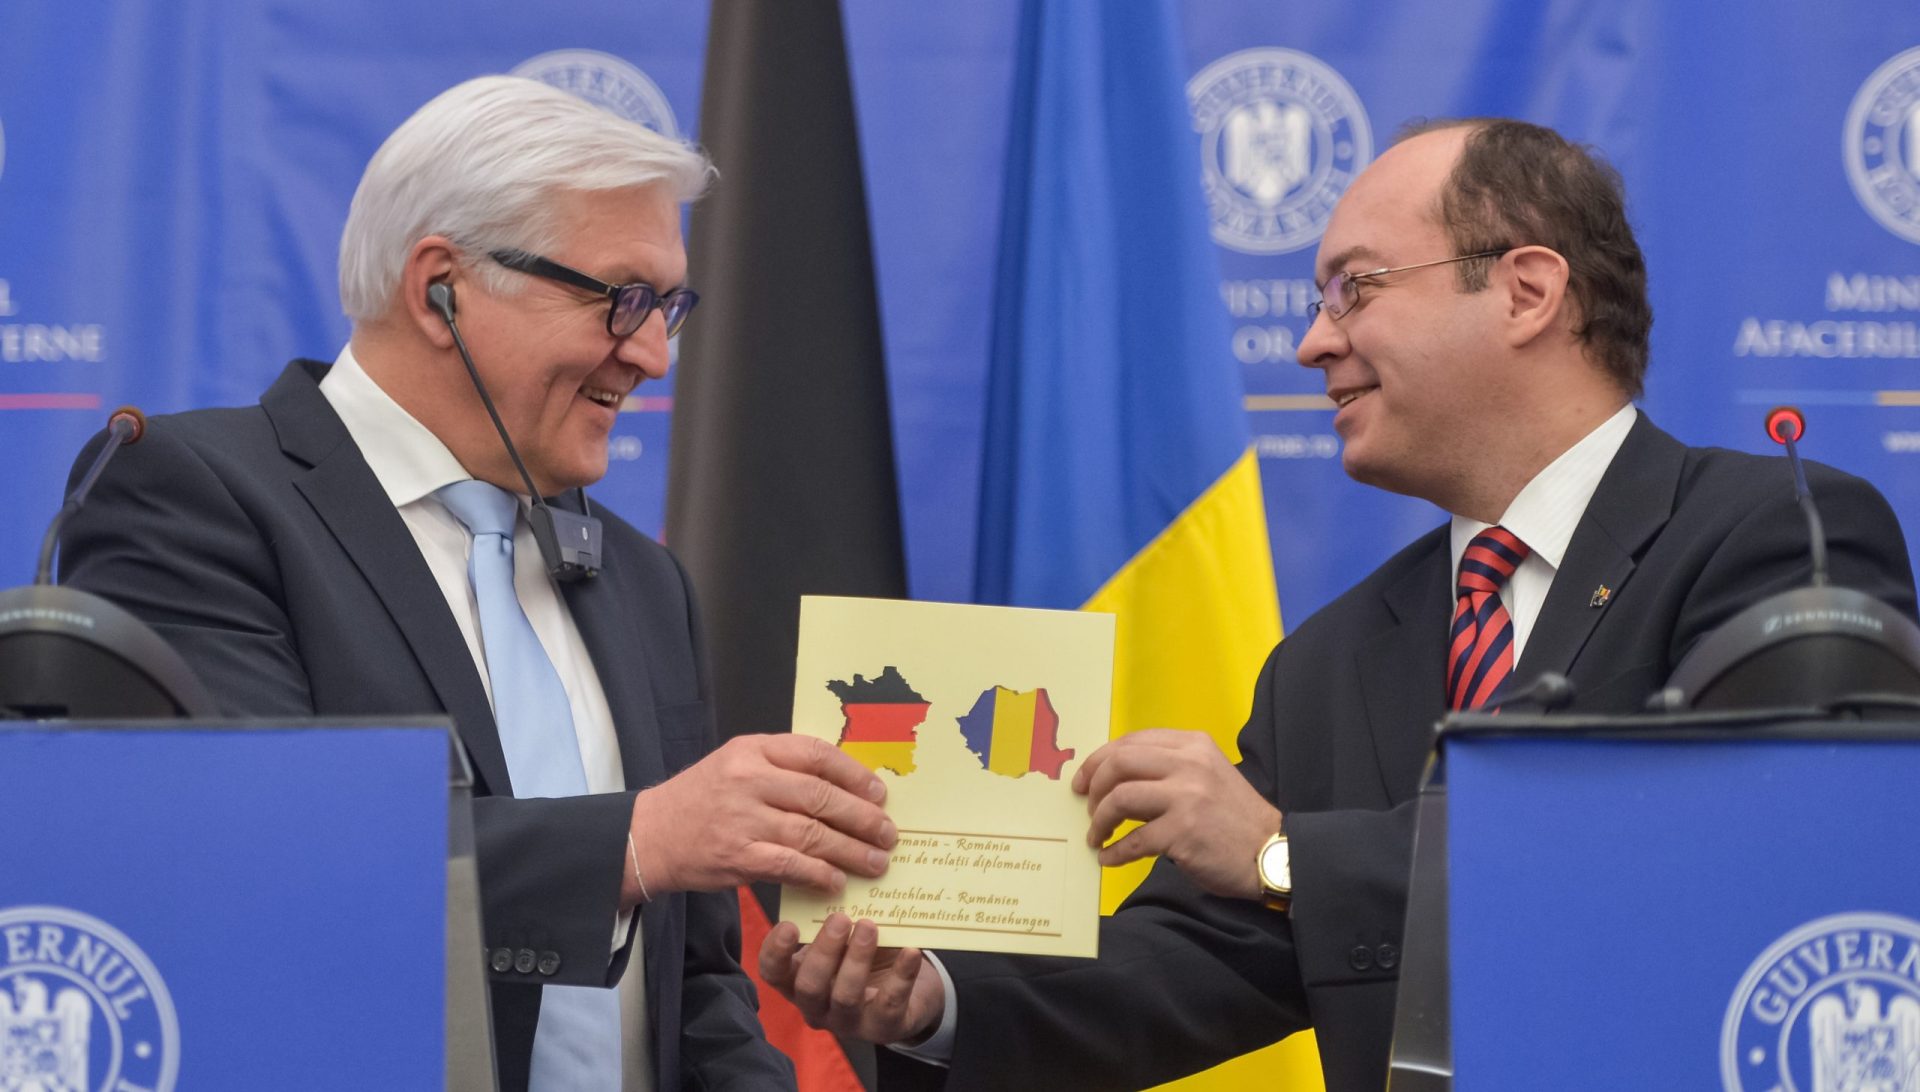 Roménia confunde Alemanha com França em plena conferência de imprensa